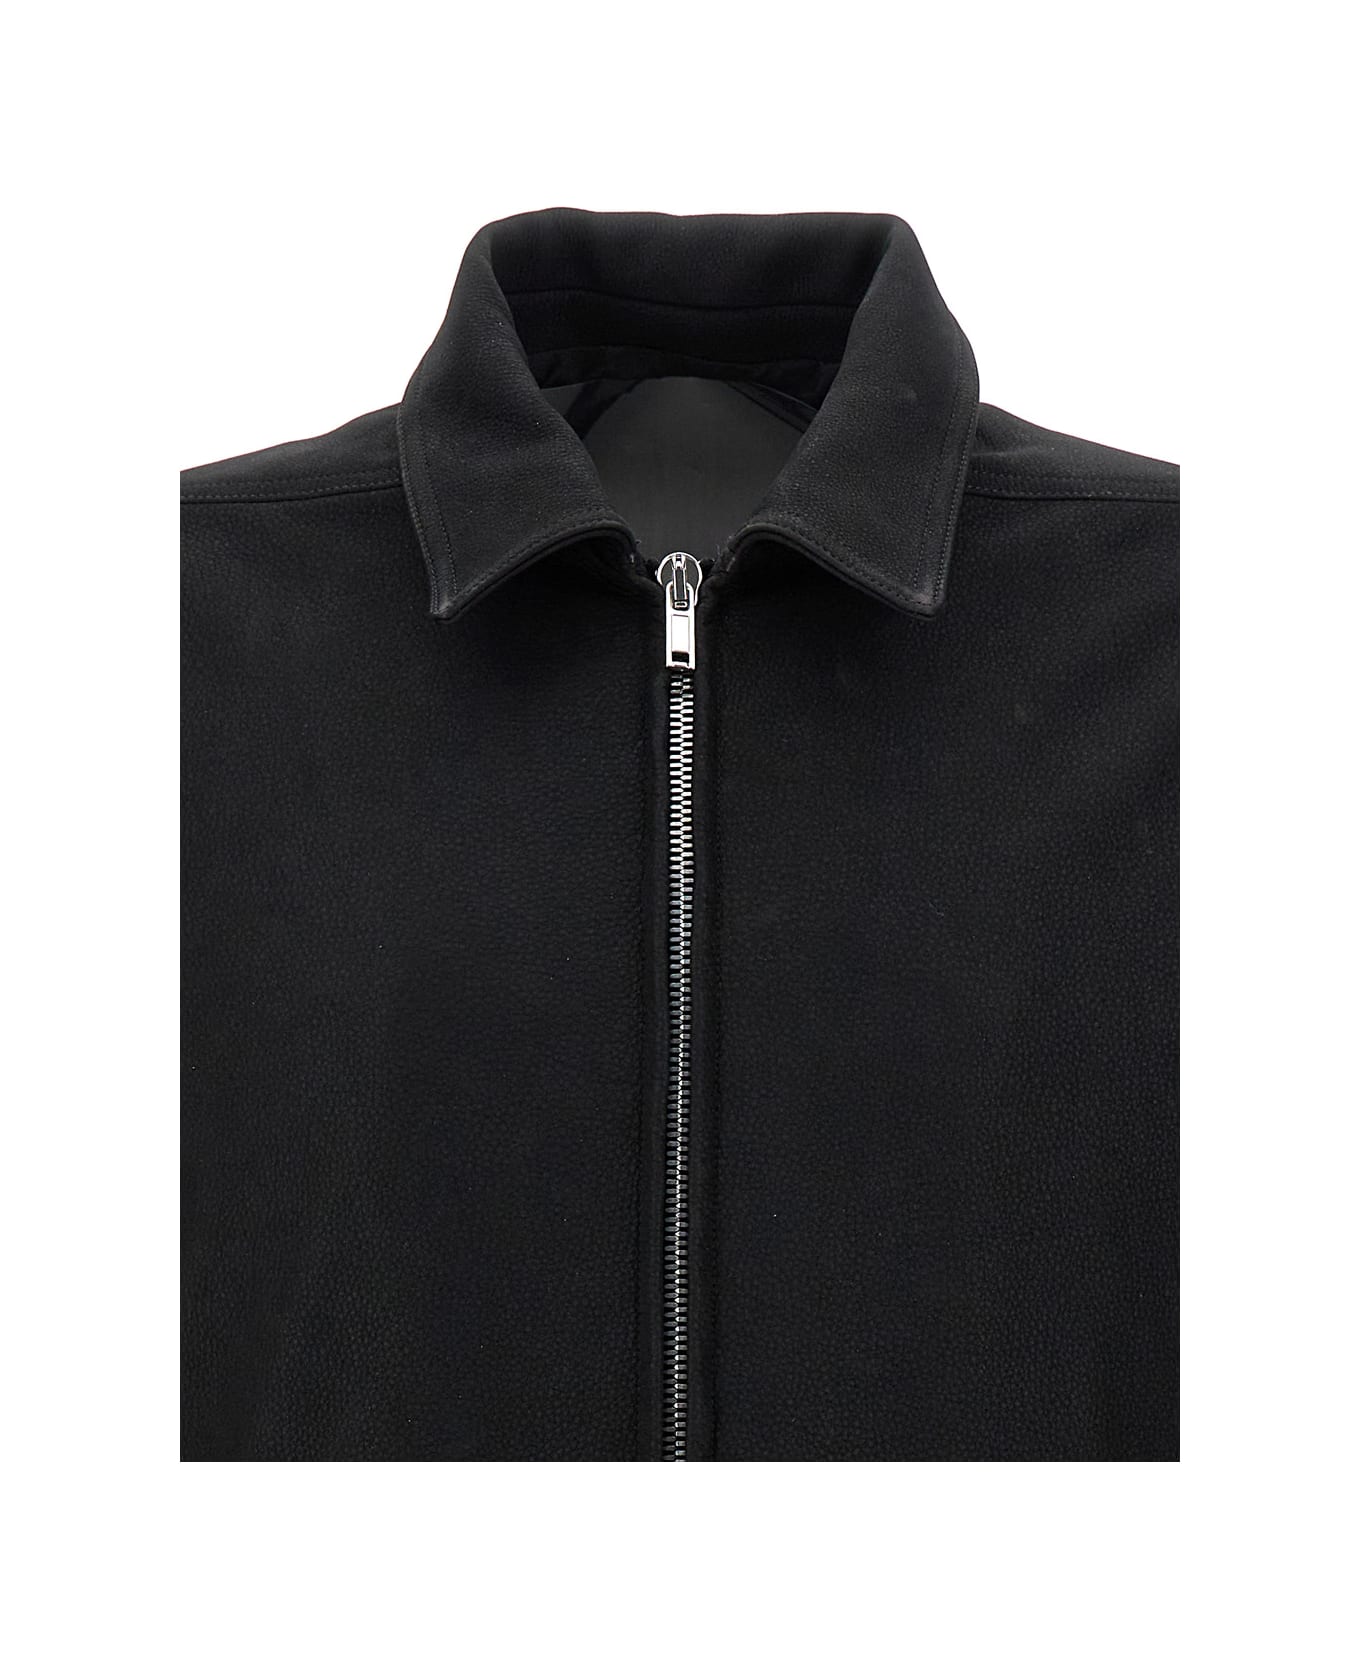 Rick Owens Leather Jacket - Black ジャケット